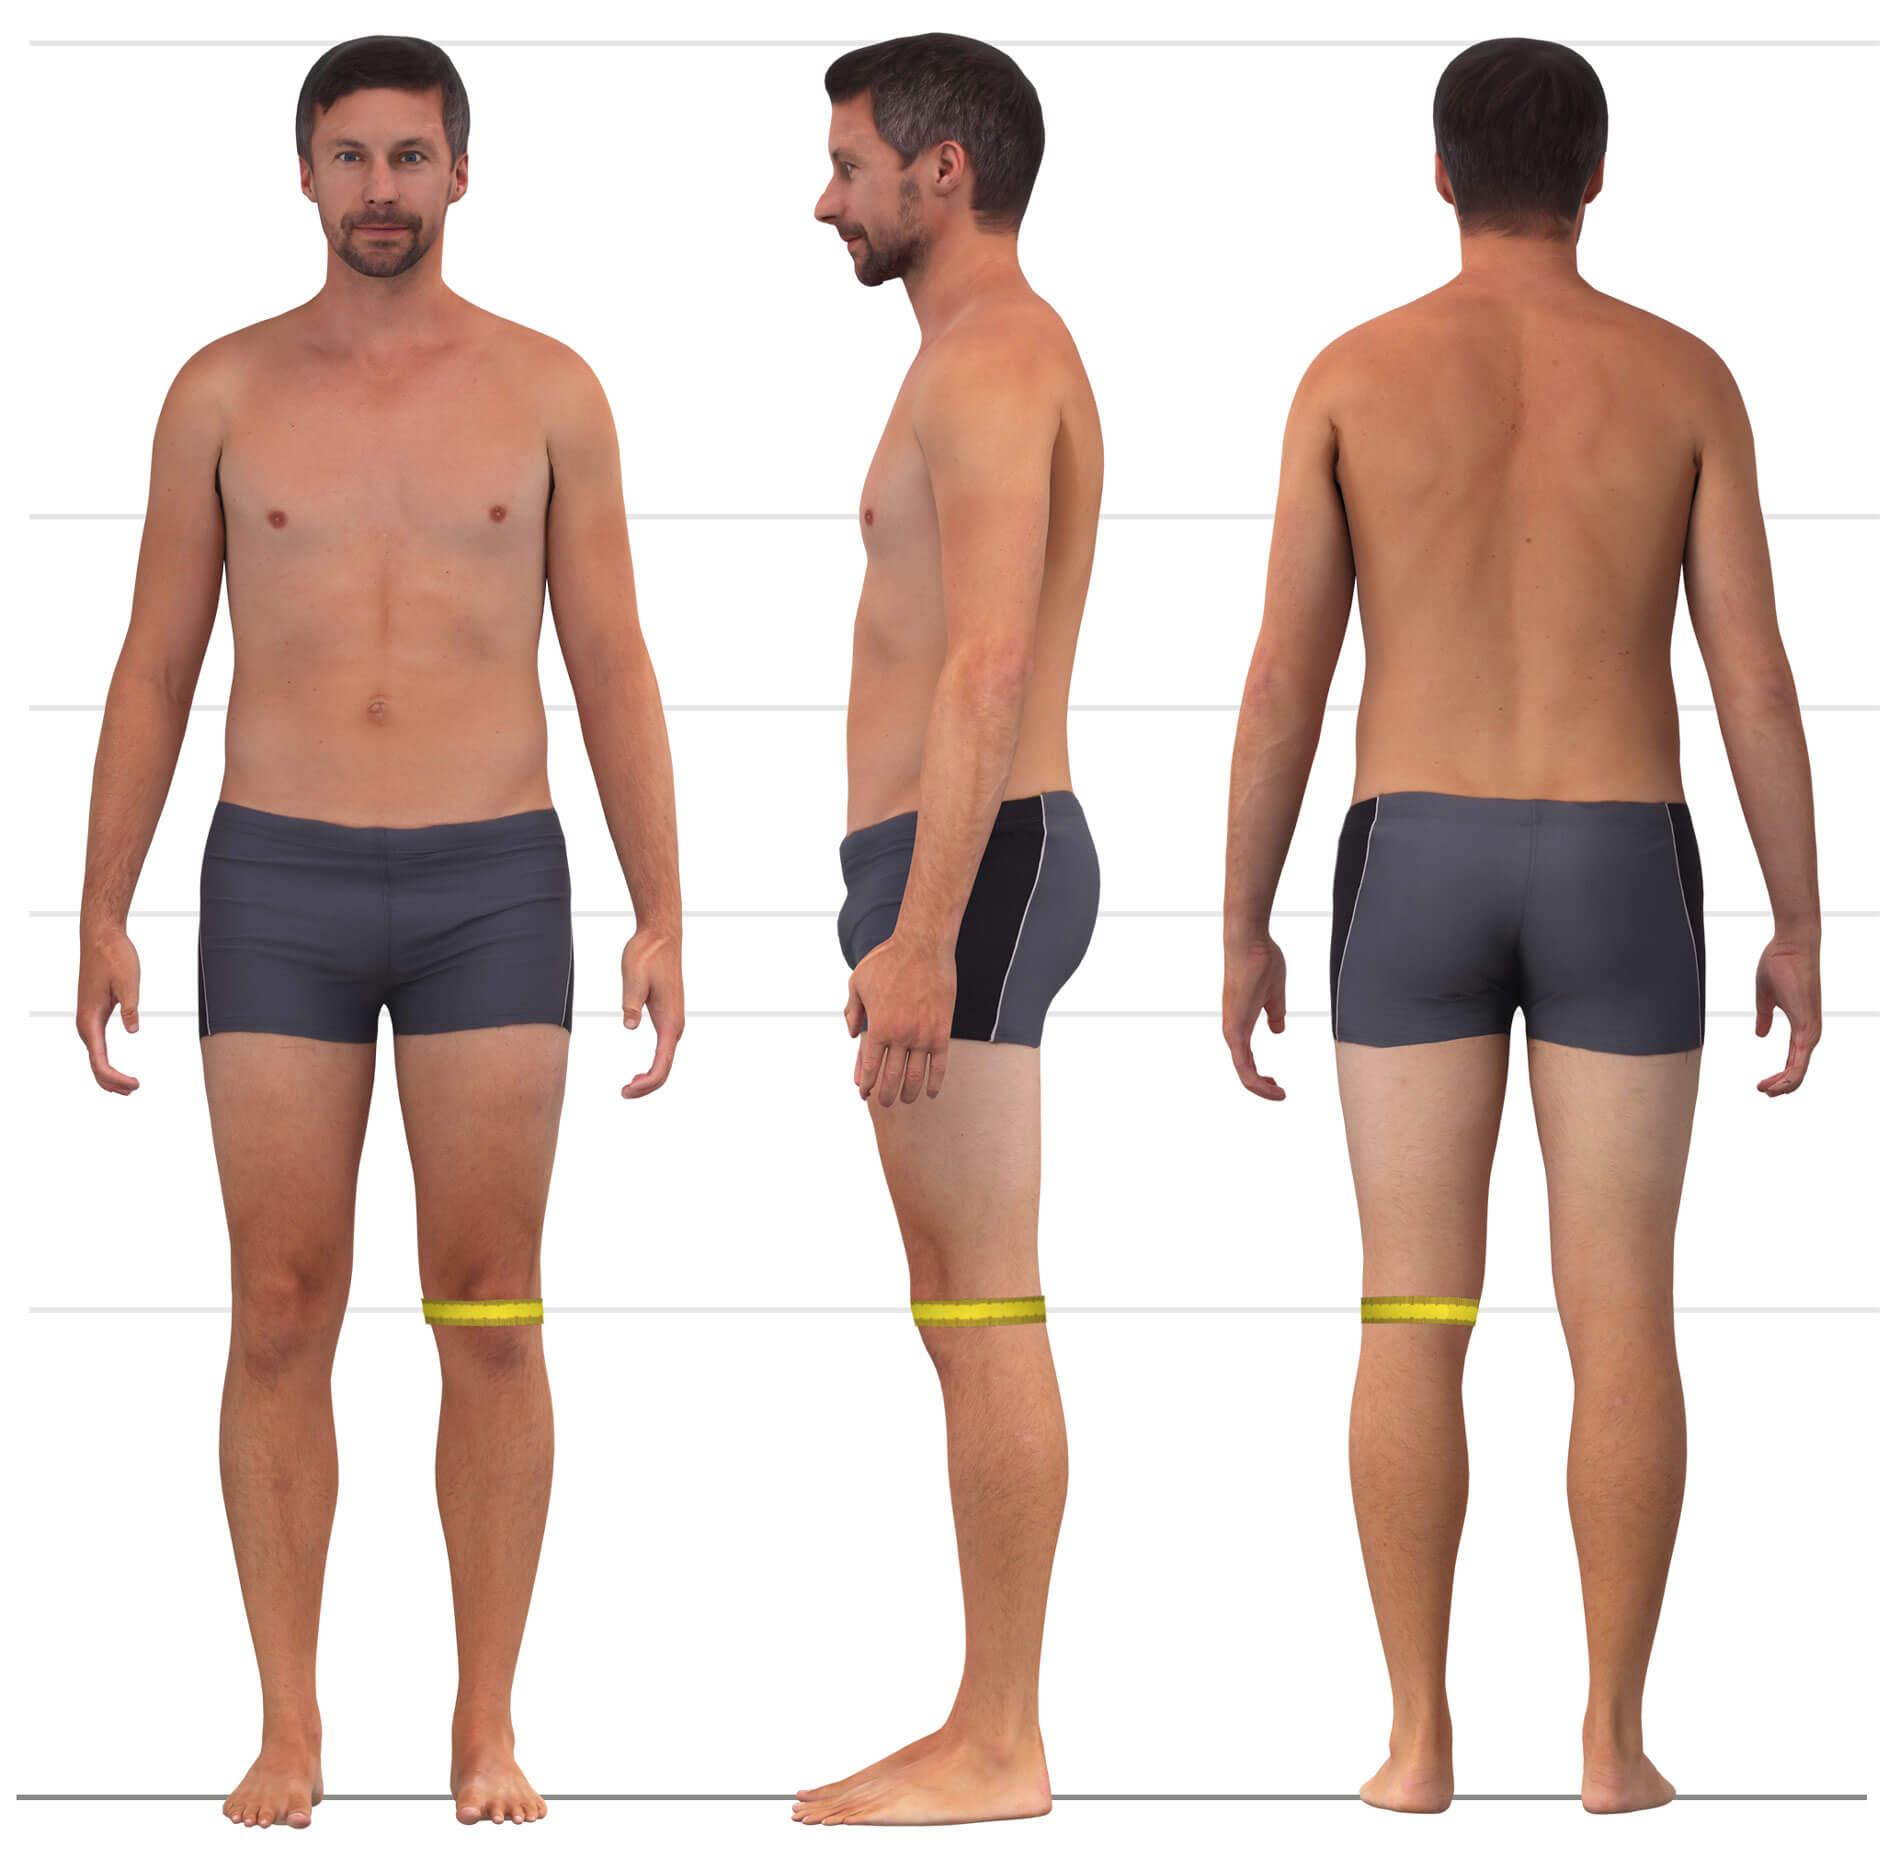 Das Bild zeigt das Maßnehmen des Knieumfangs für Männerhosen.